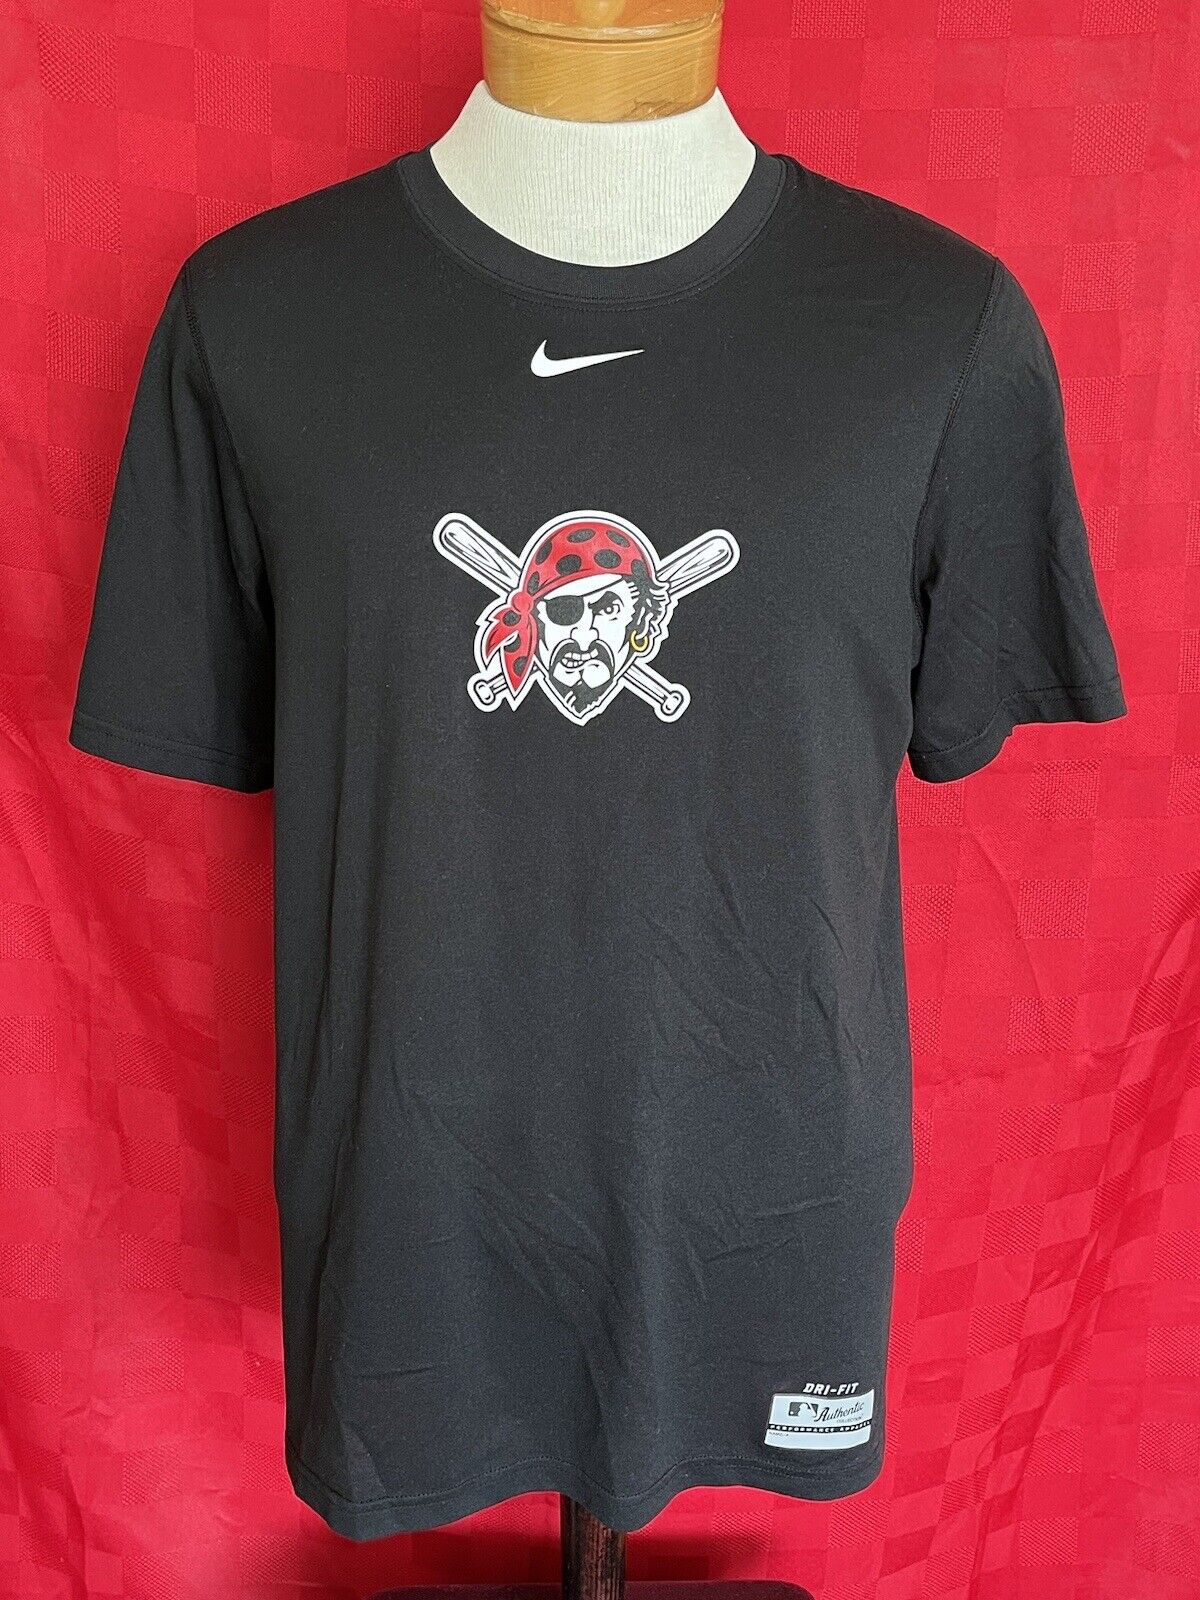 pittsburgh pirates nike shirt